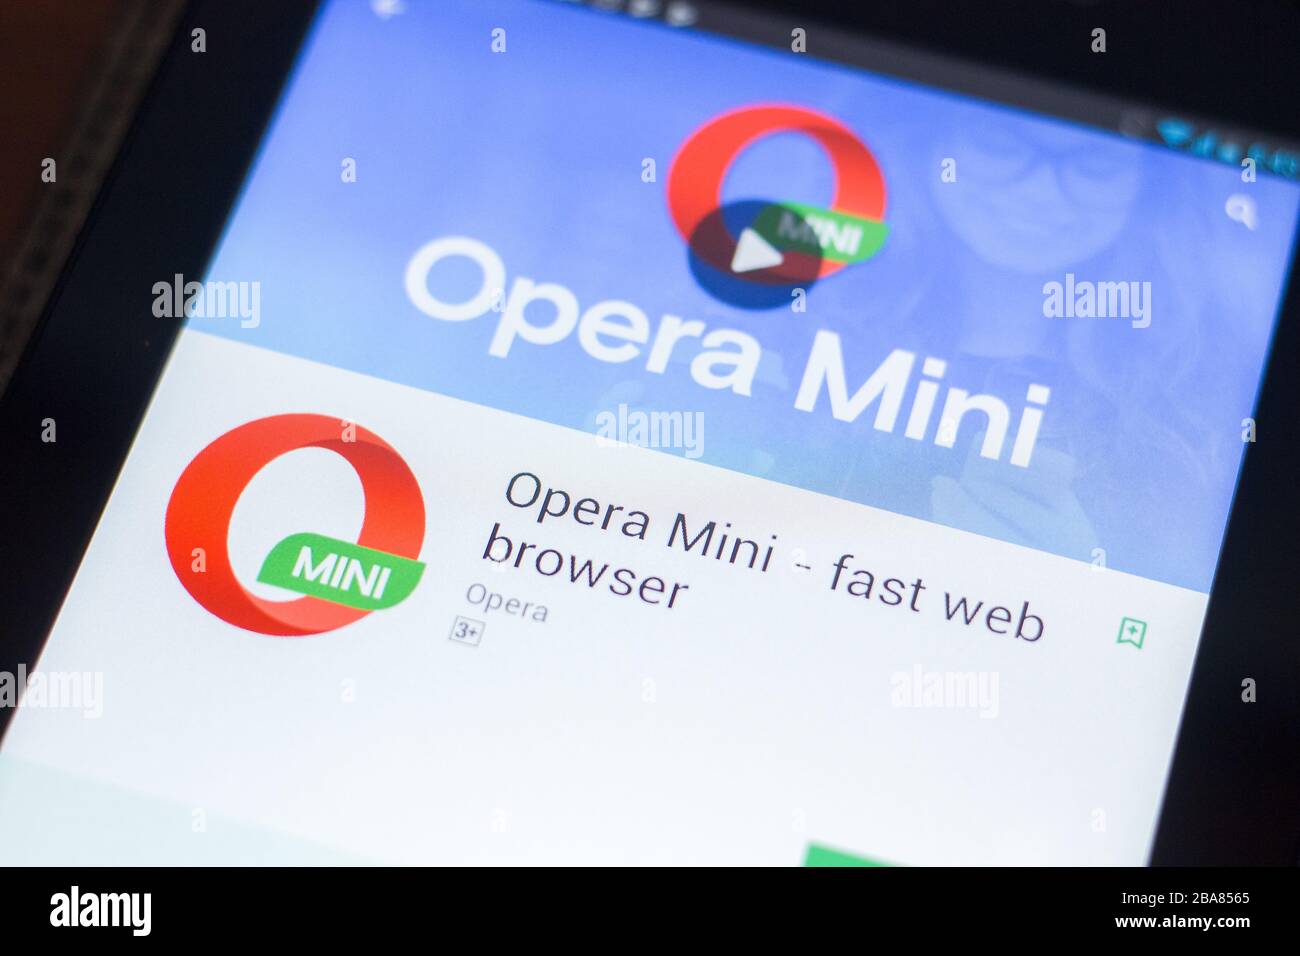 Web browser opera Opera